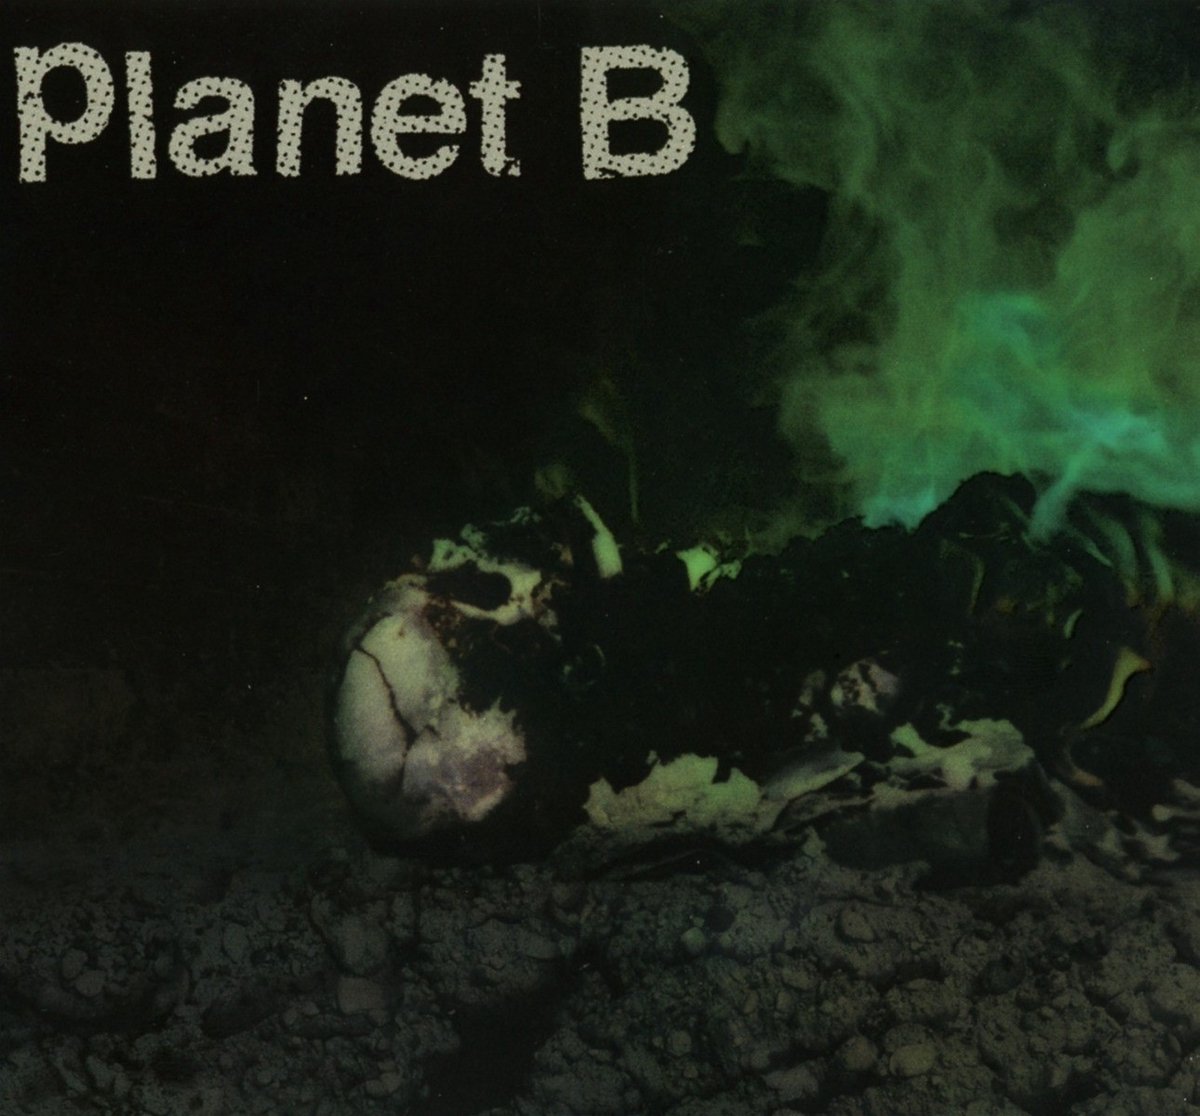 Planet B - Planet B (CD)